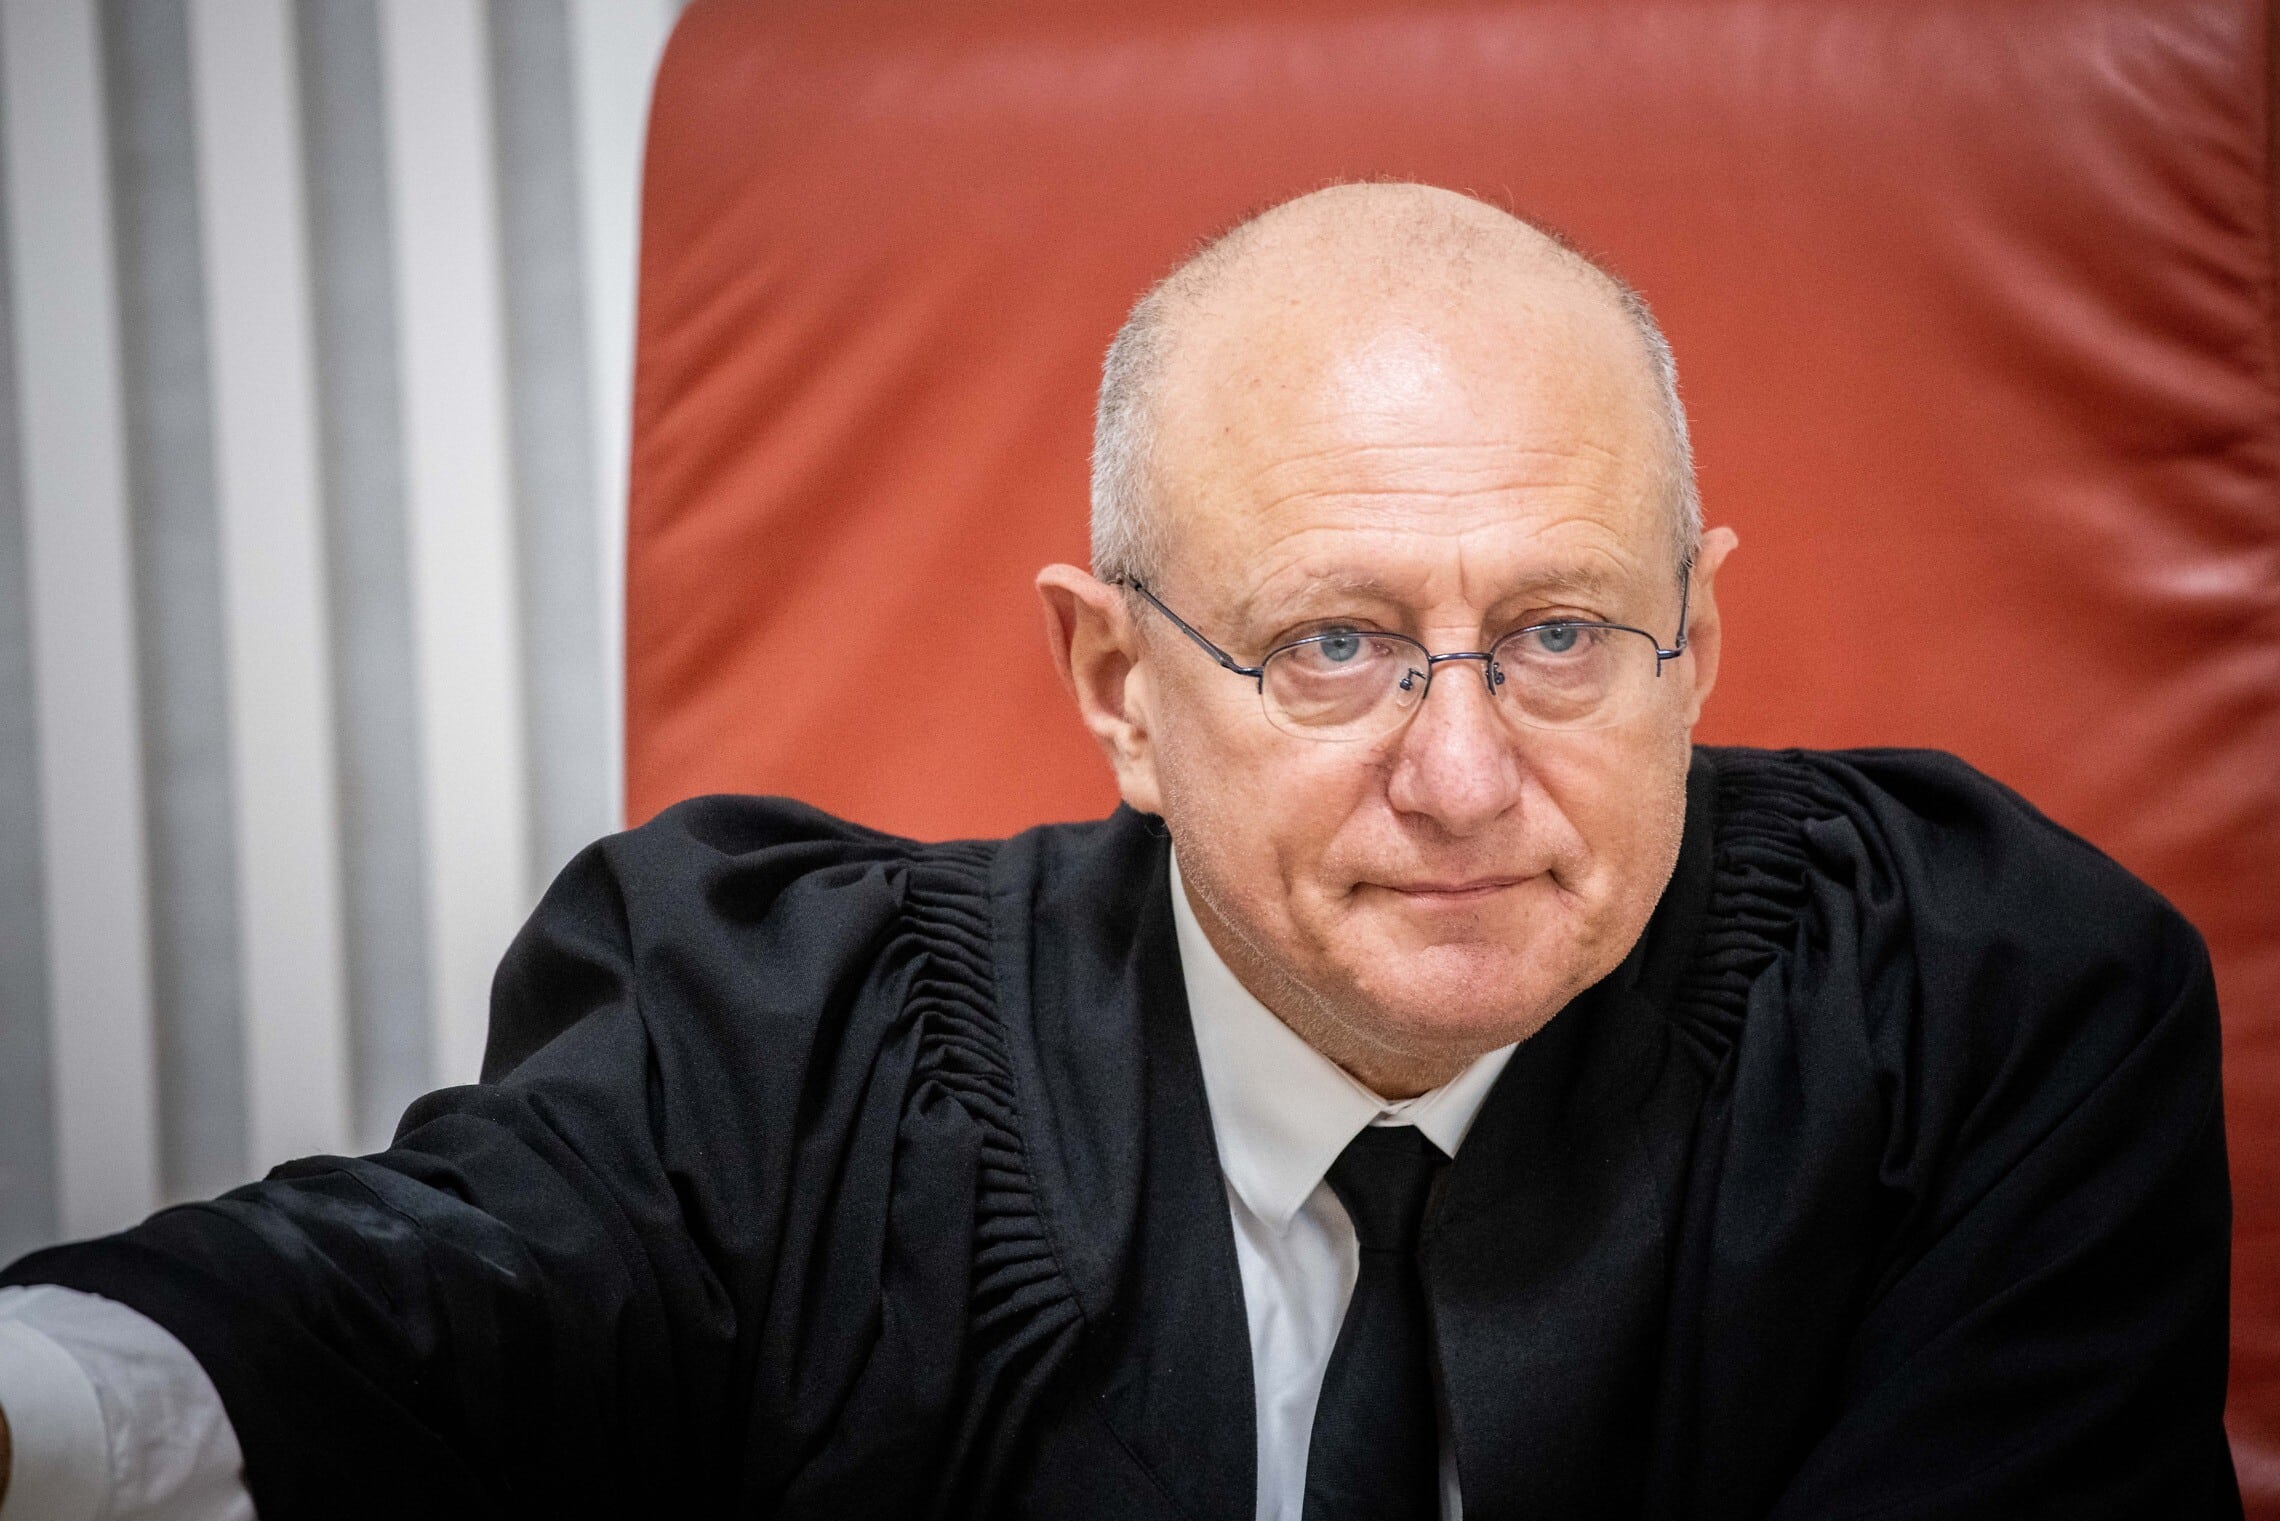 שופט בית המשפט העליון אלכס שטיין בדיון על שחרורו של רומן זדורוב, 20 באוגוסט 2021 (צילום: יונתן זינדל/פלאש90)